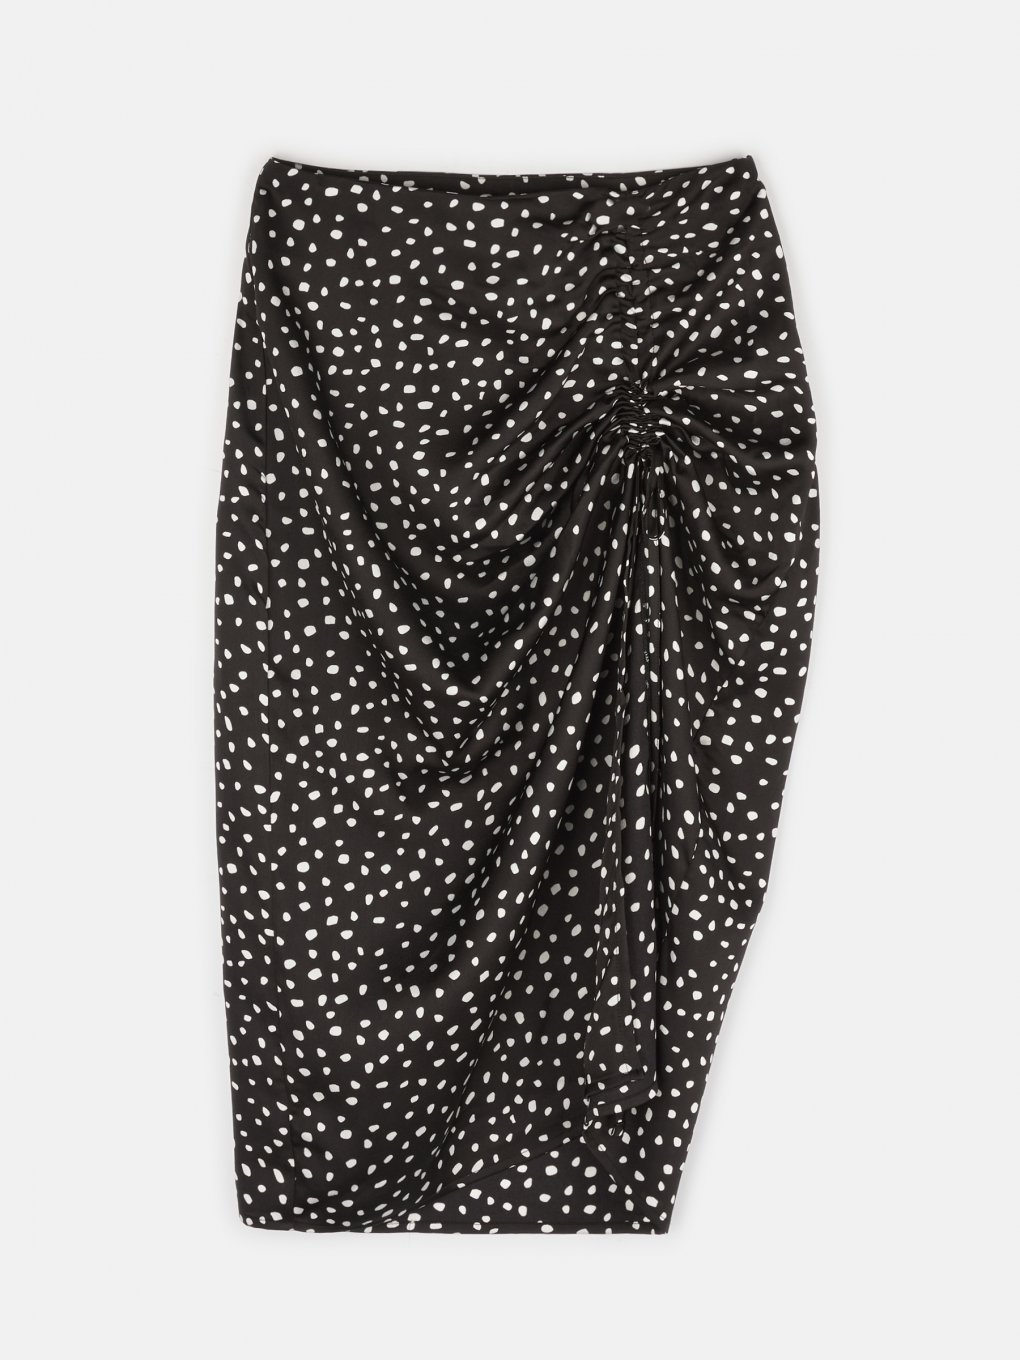 Polka dot asymmetric skirt